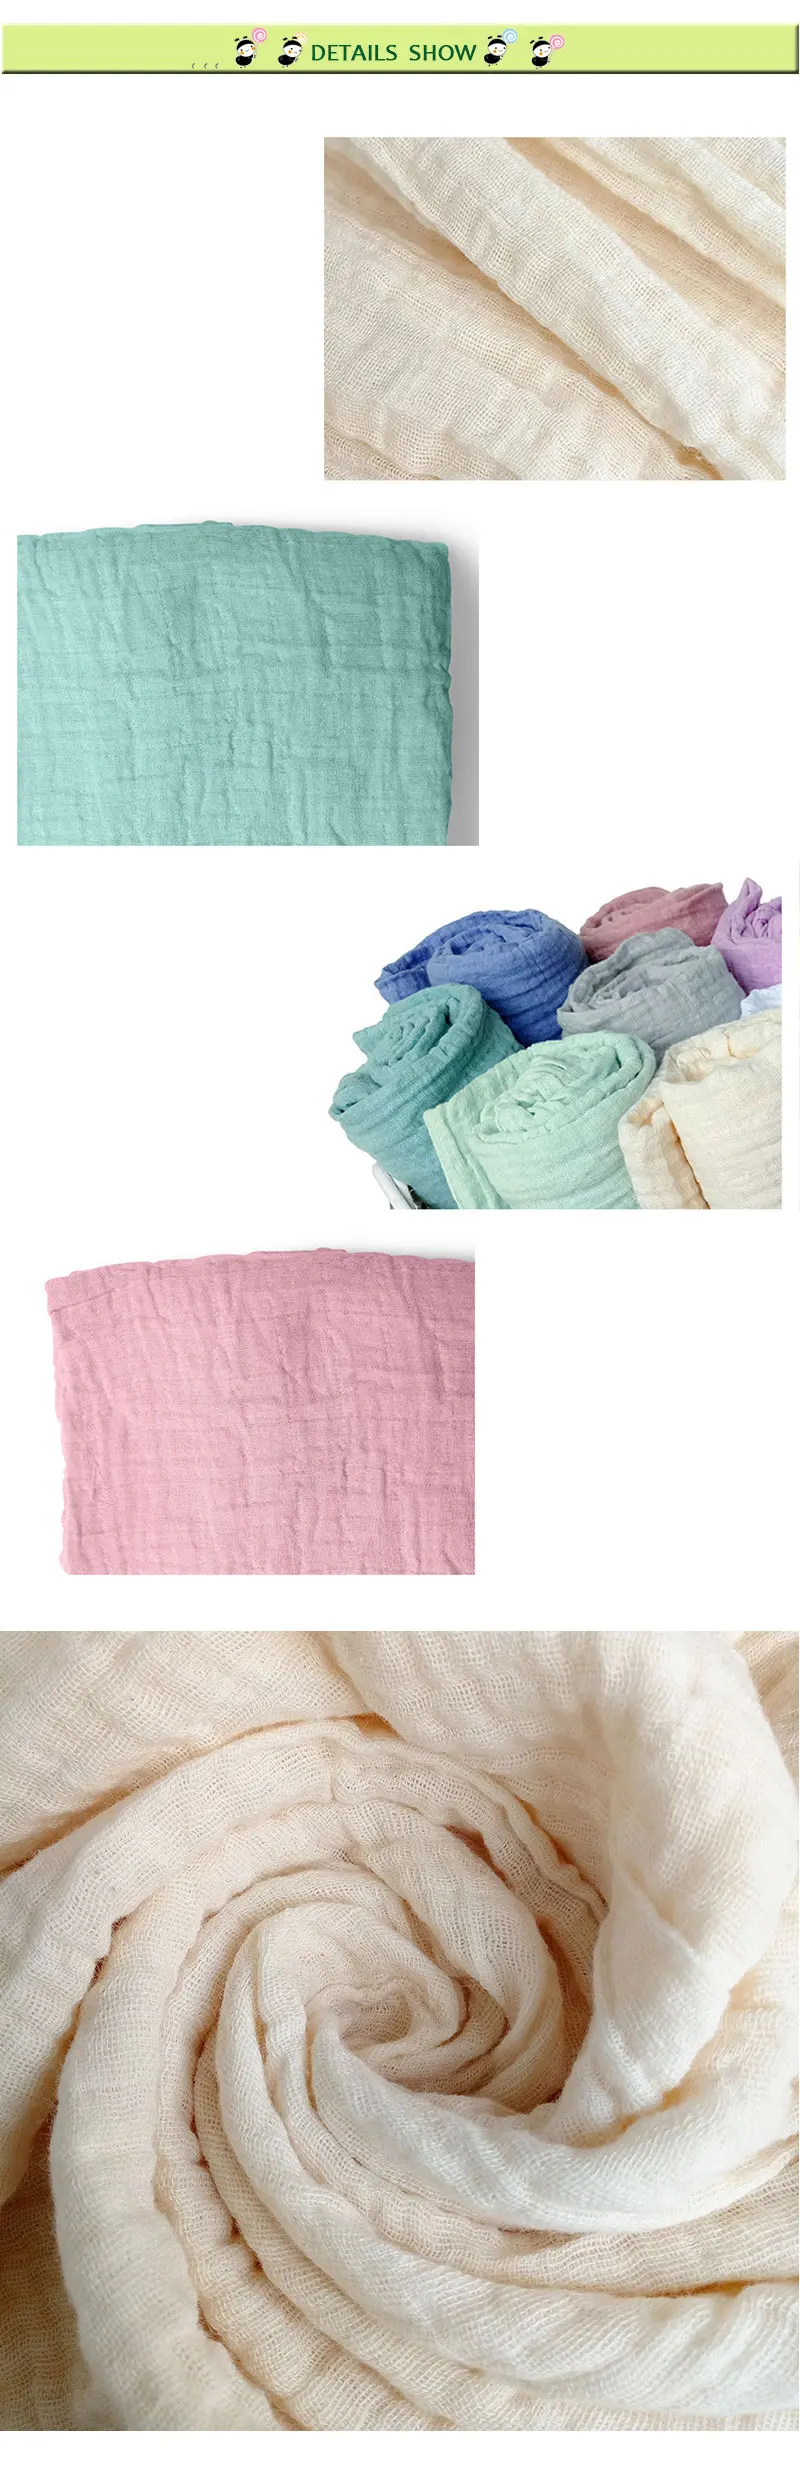 Пеленки для новорожденного активная печать одноцветное цвет детское одеяло s для новорожденных Муслин 100% хлопок детское одеяло полотенца